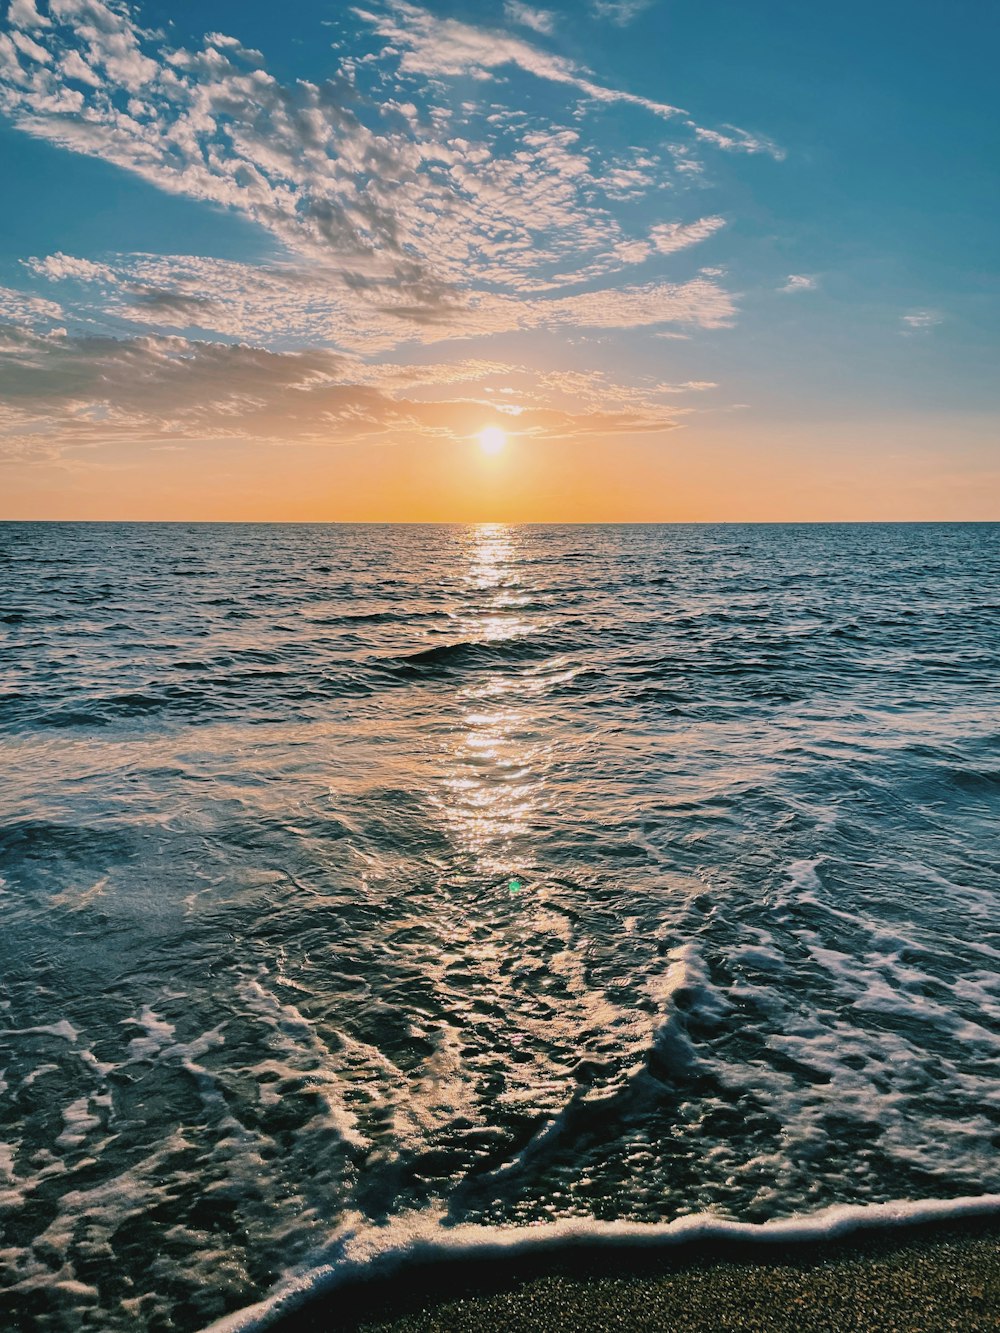 Onde dell'oceano che si infrangono sulla riva durante il tramonto